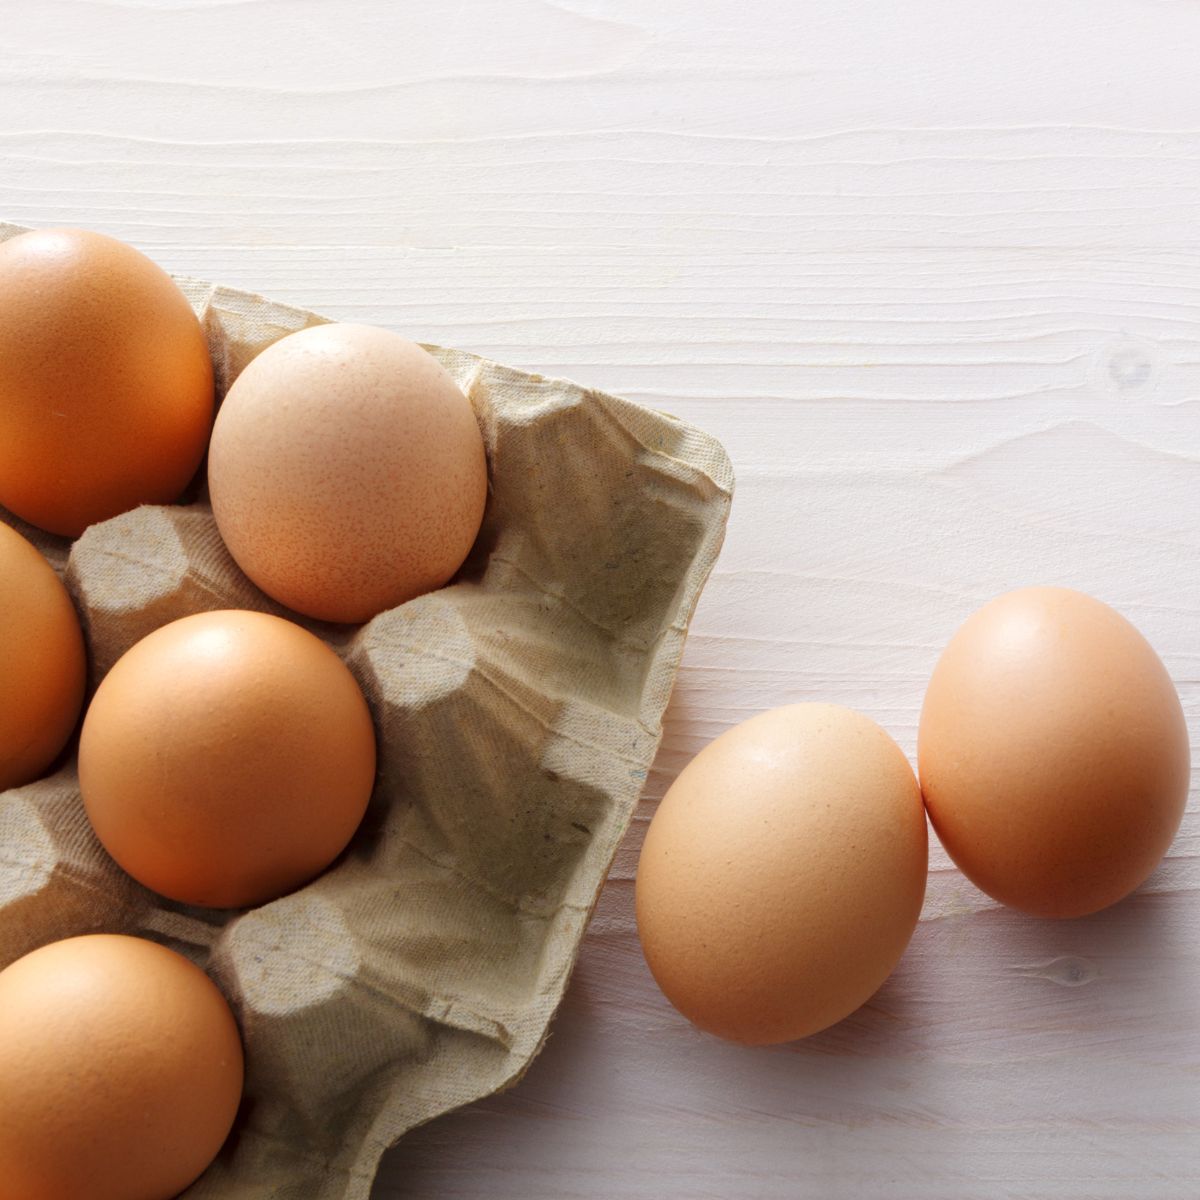 mistä tietää onko kananmuna pilalla